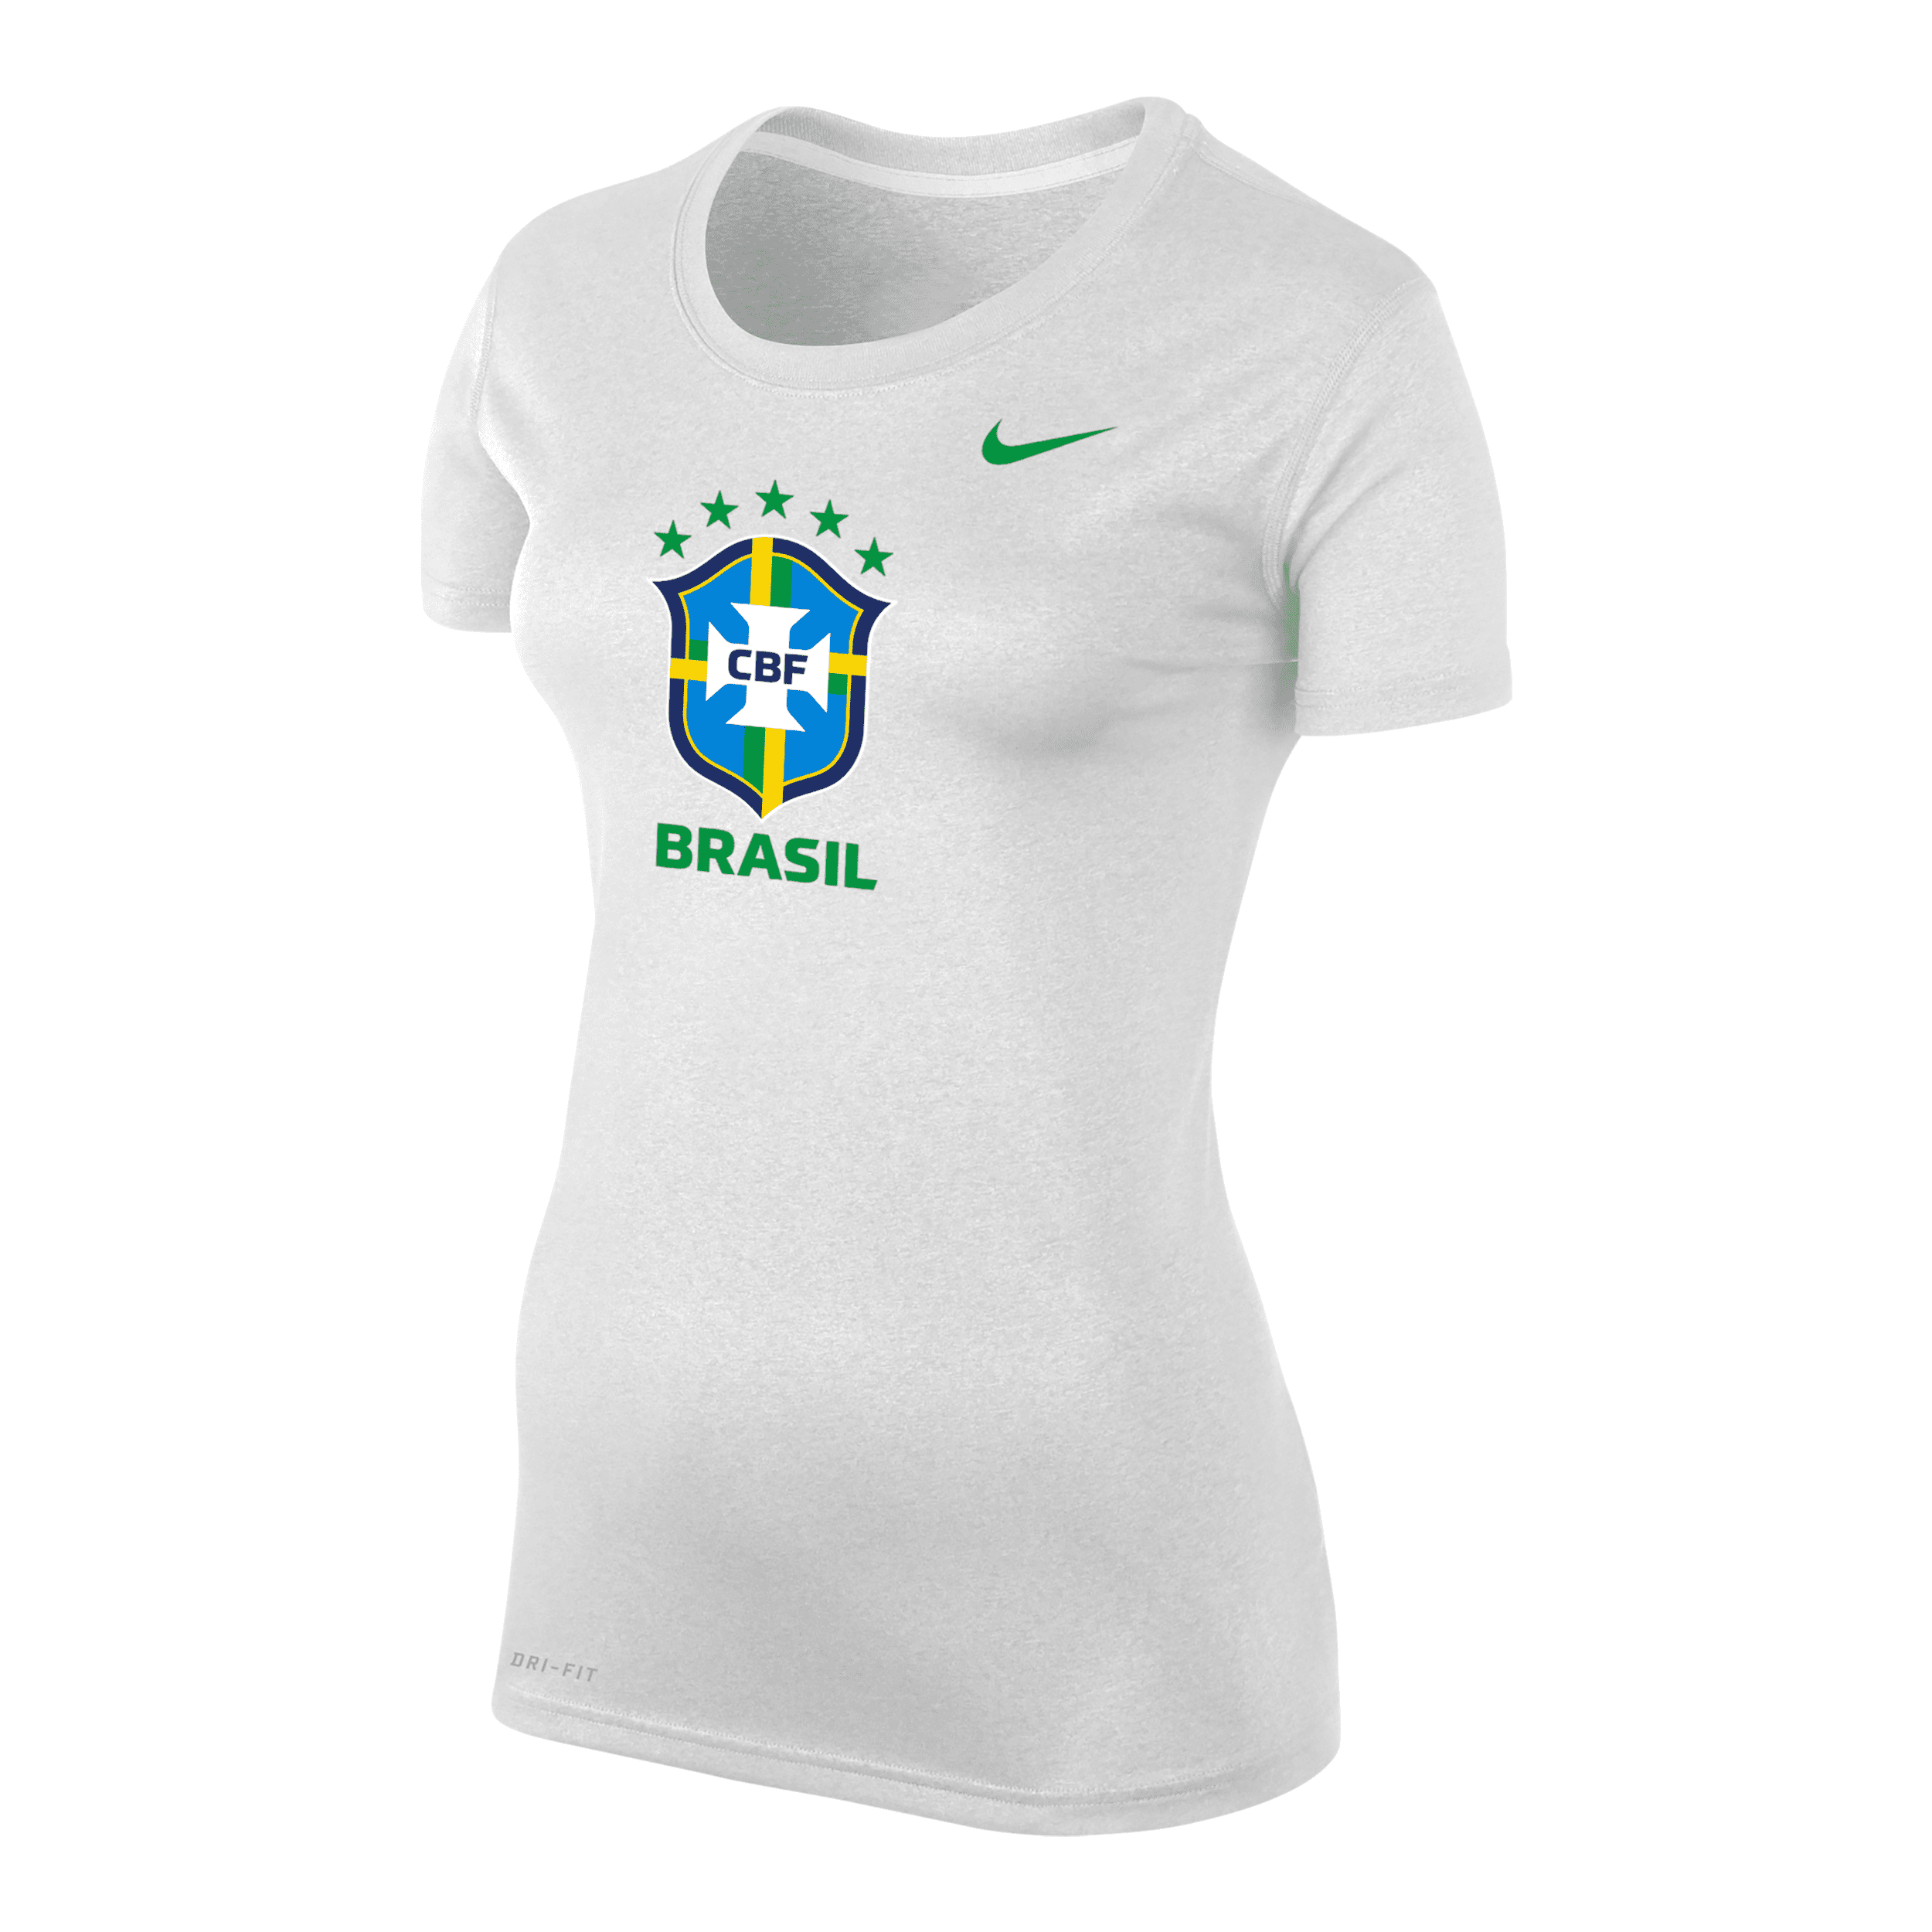 NIKE BRAZIL LEGEND  WOMEN'S DRI-FIT T-SHIRT,1011848460